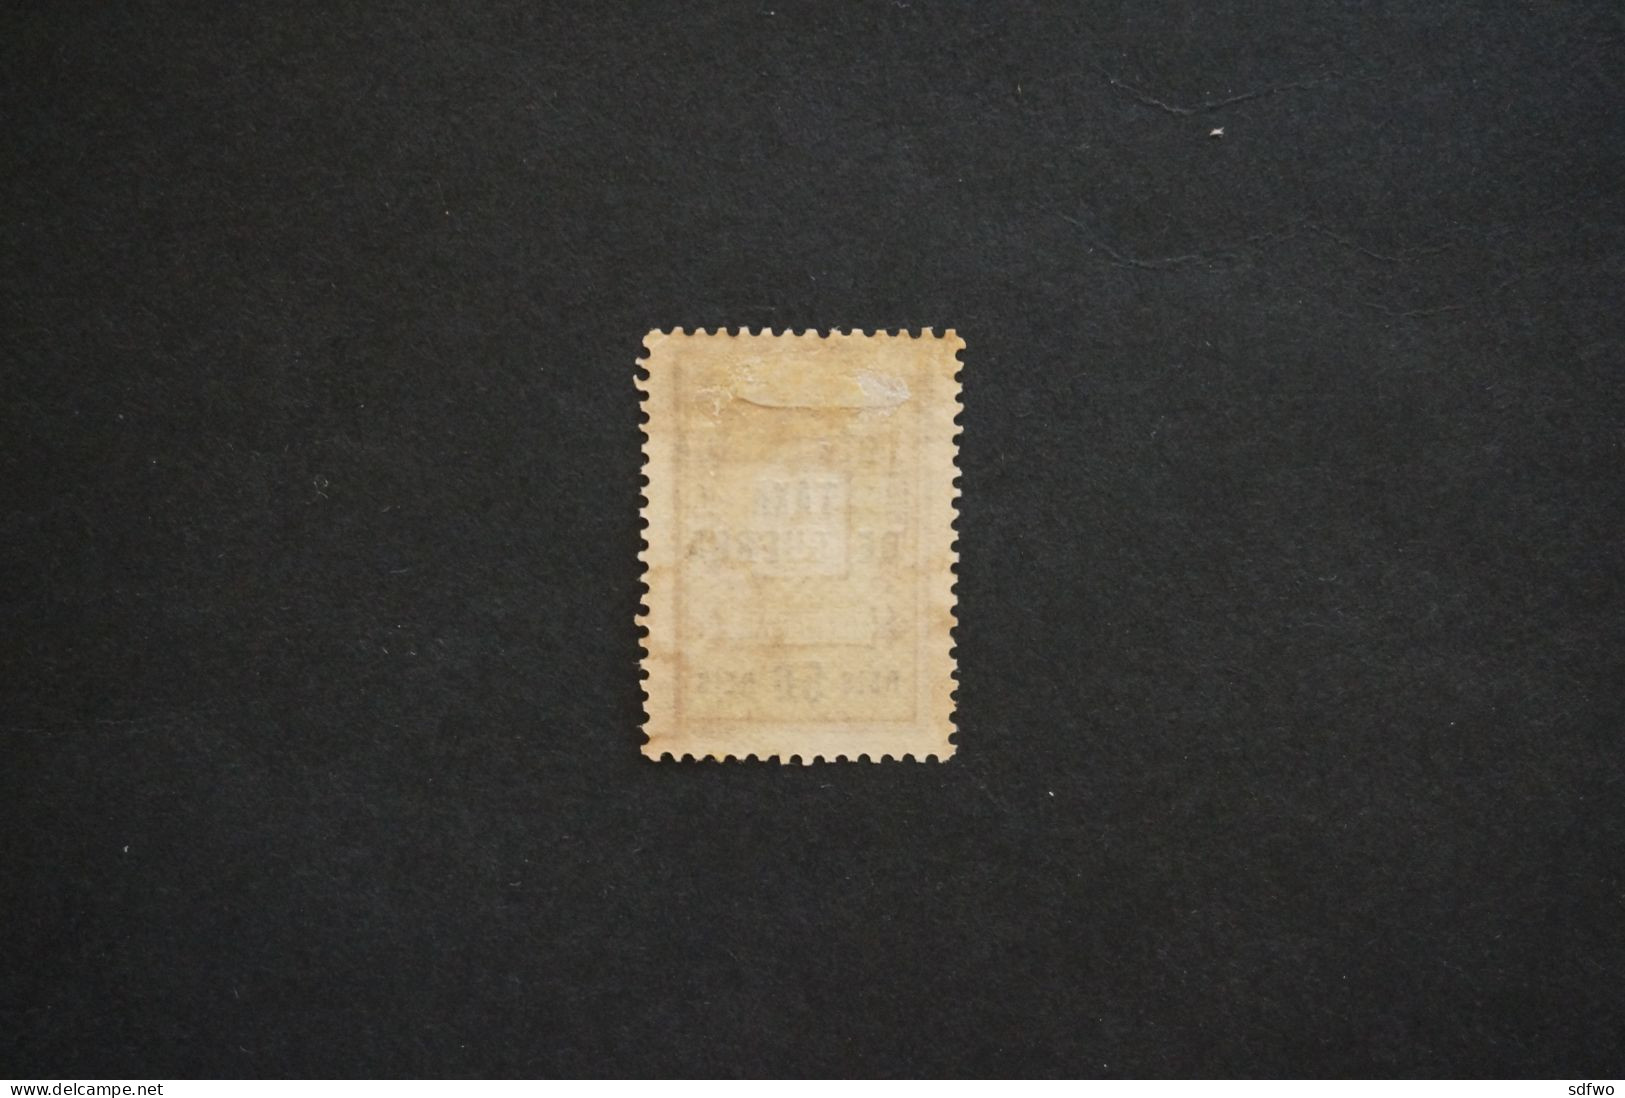 (T1) Portuguese Guinea - 1919  War Tax Stamp - TAXA DE GUERRA - 50 R (MH - No Gum) - Guinea Portuguesa